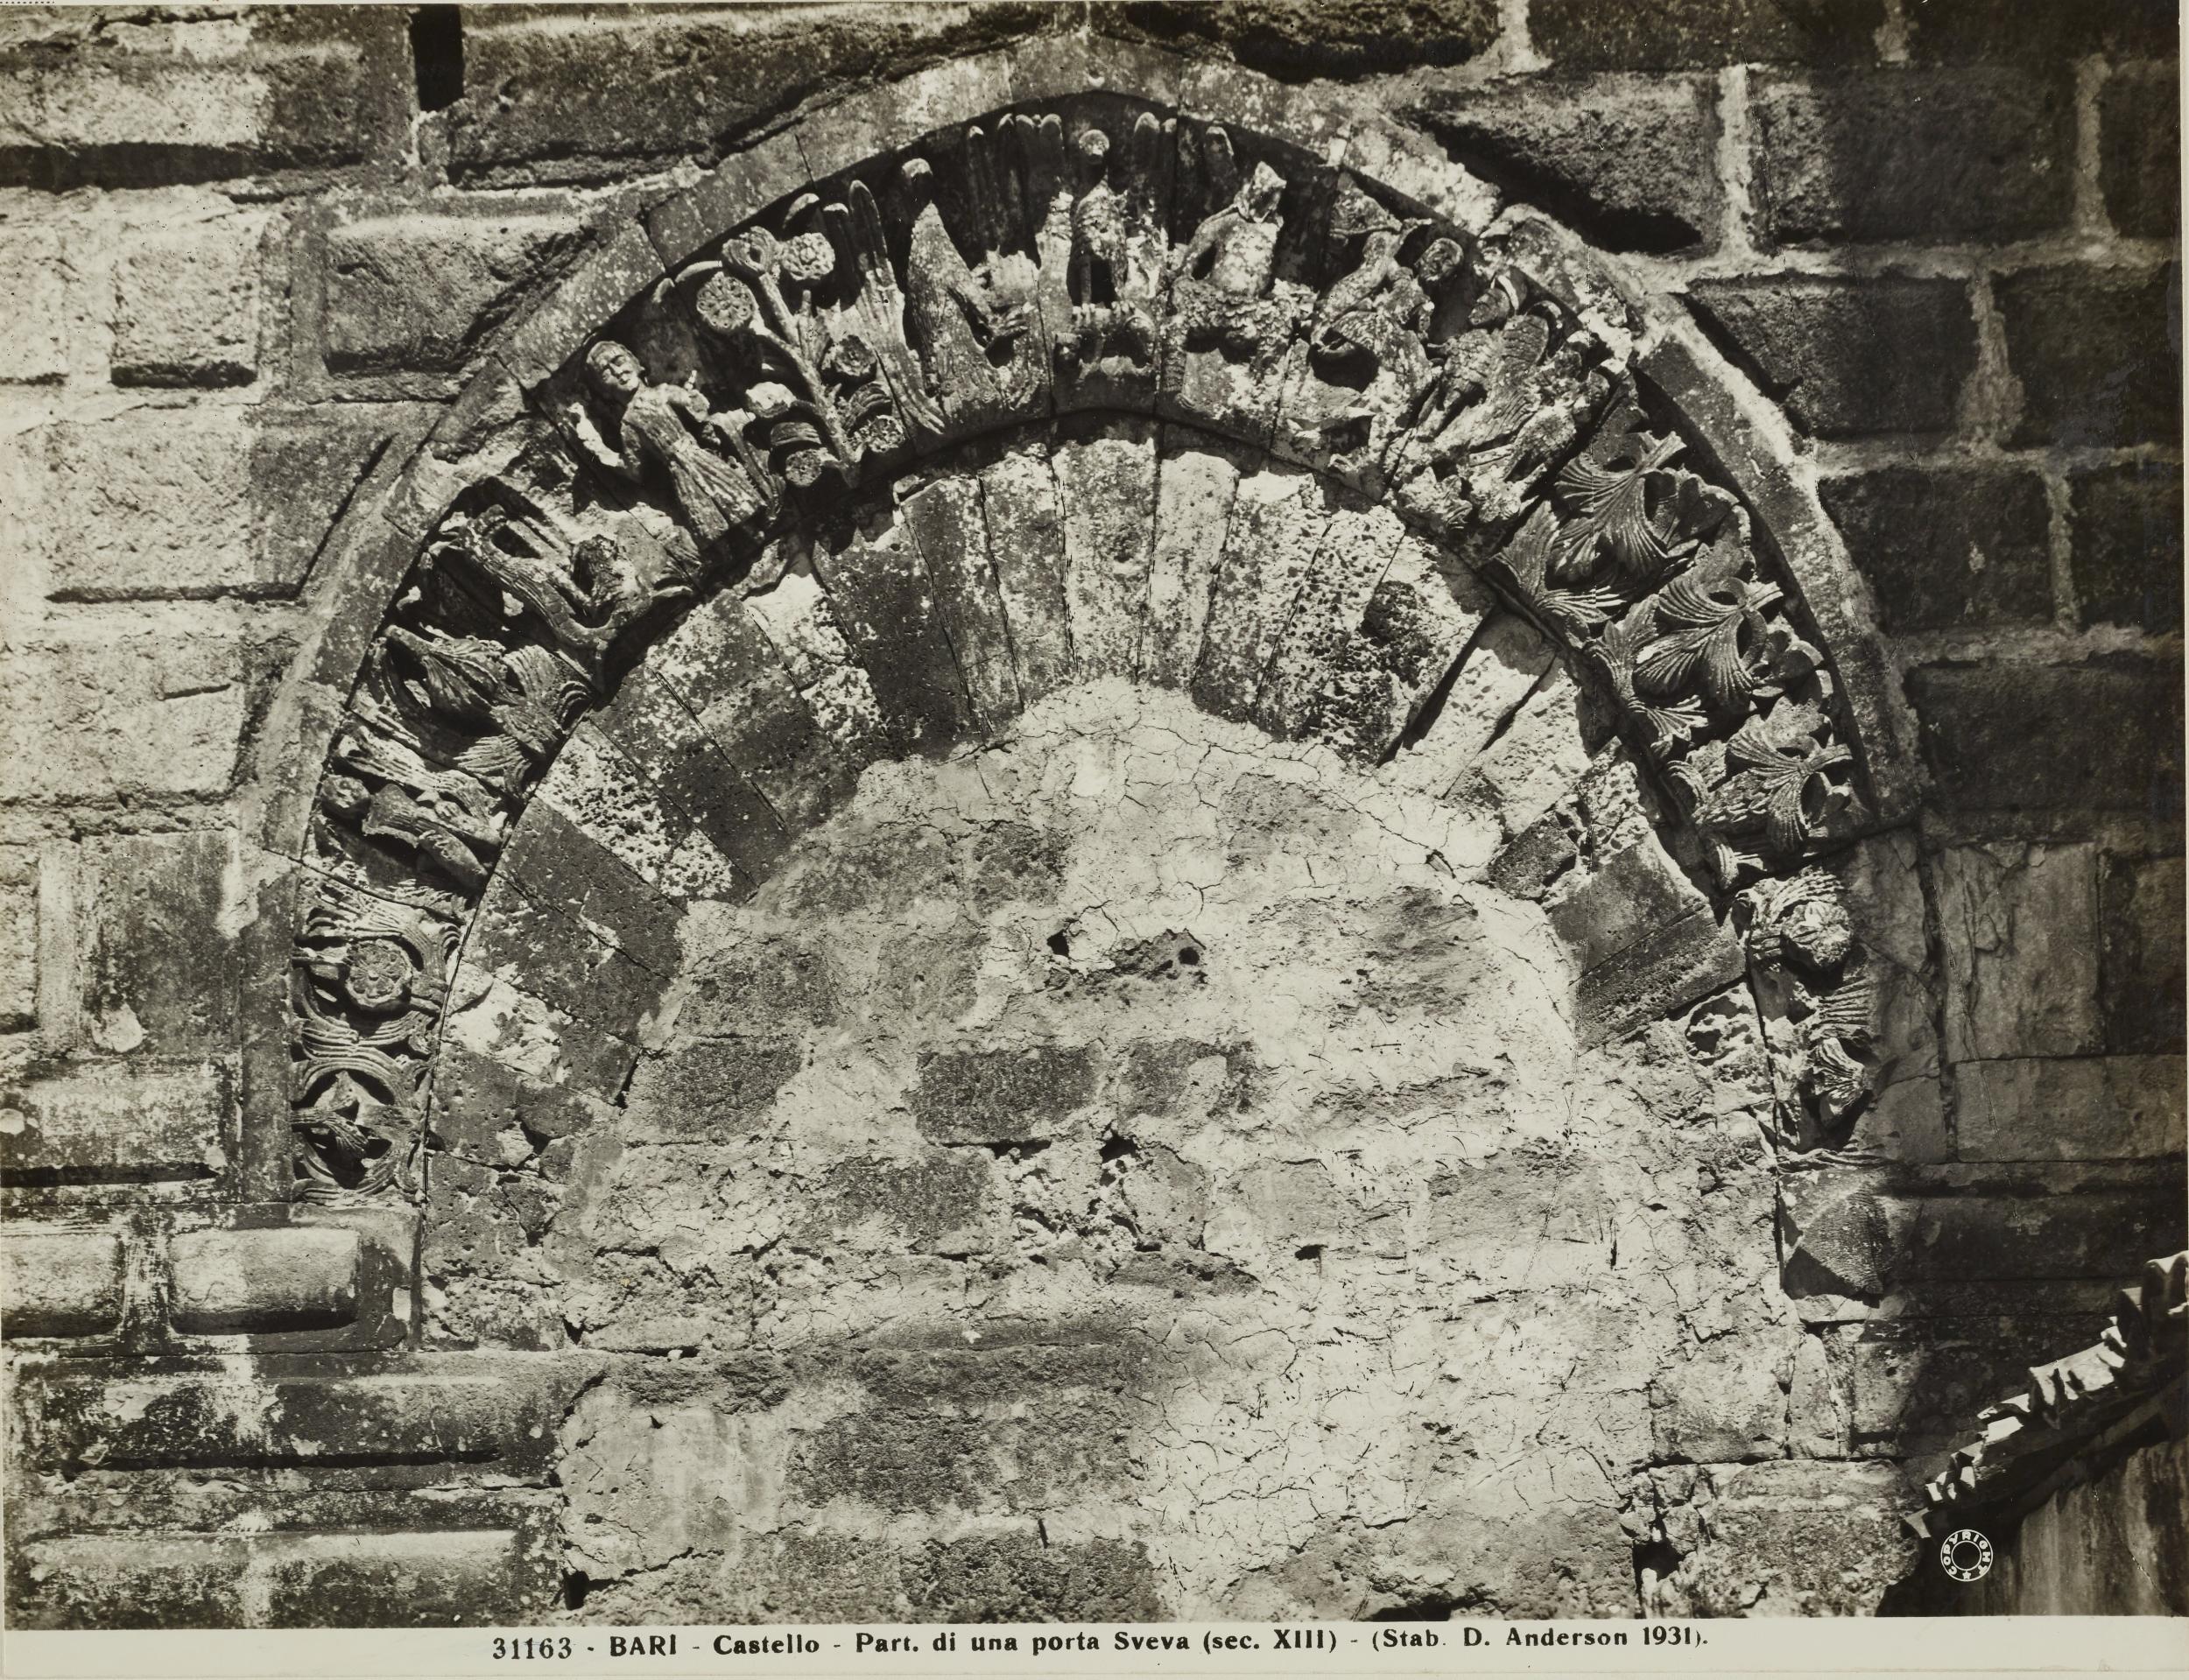 Fotografo non identificato, Bari - Castello Svevo, particolare di una porta sveva, 1931, gelatina ai sali d'argento/carta, MPI136571